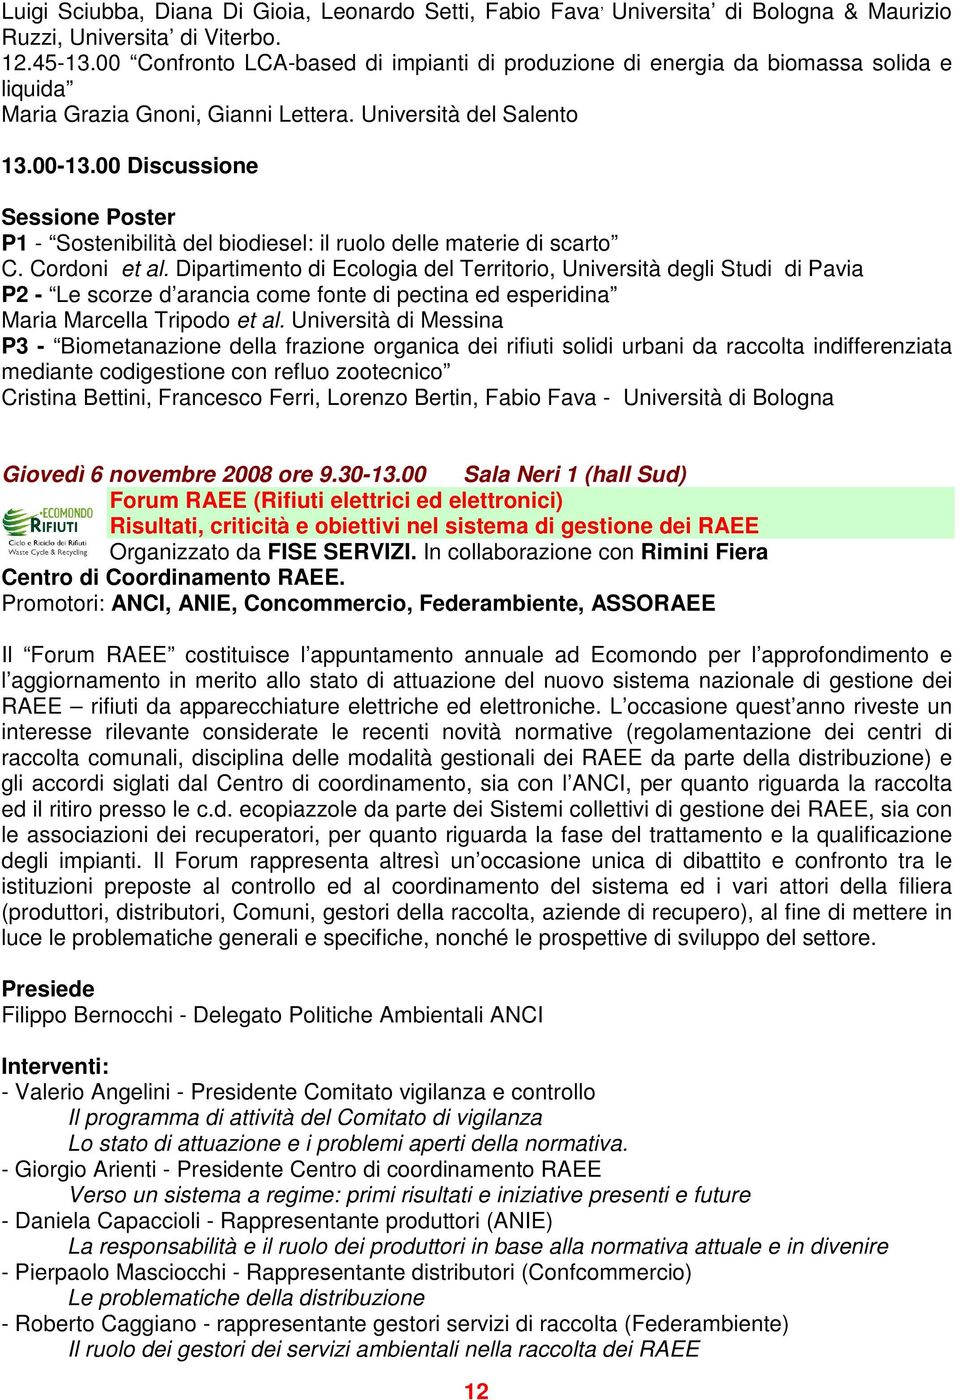 00 Discussione Sessione Poster P1 - Sostenibilità del biodiesel: il ruolo delle materie di scarto C. Cordoni et al.